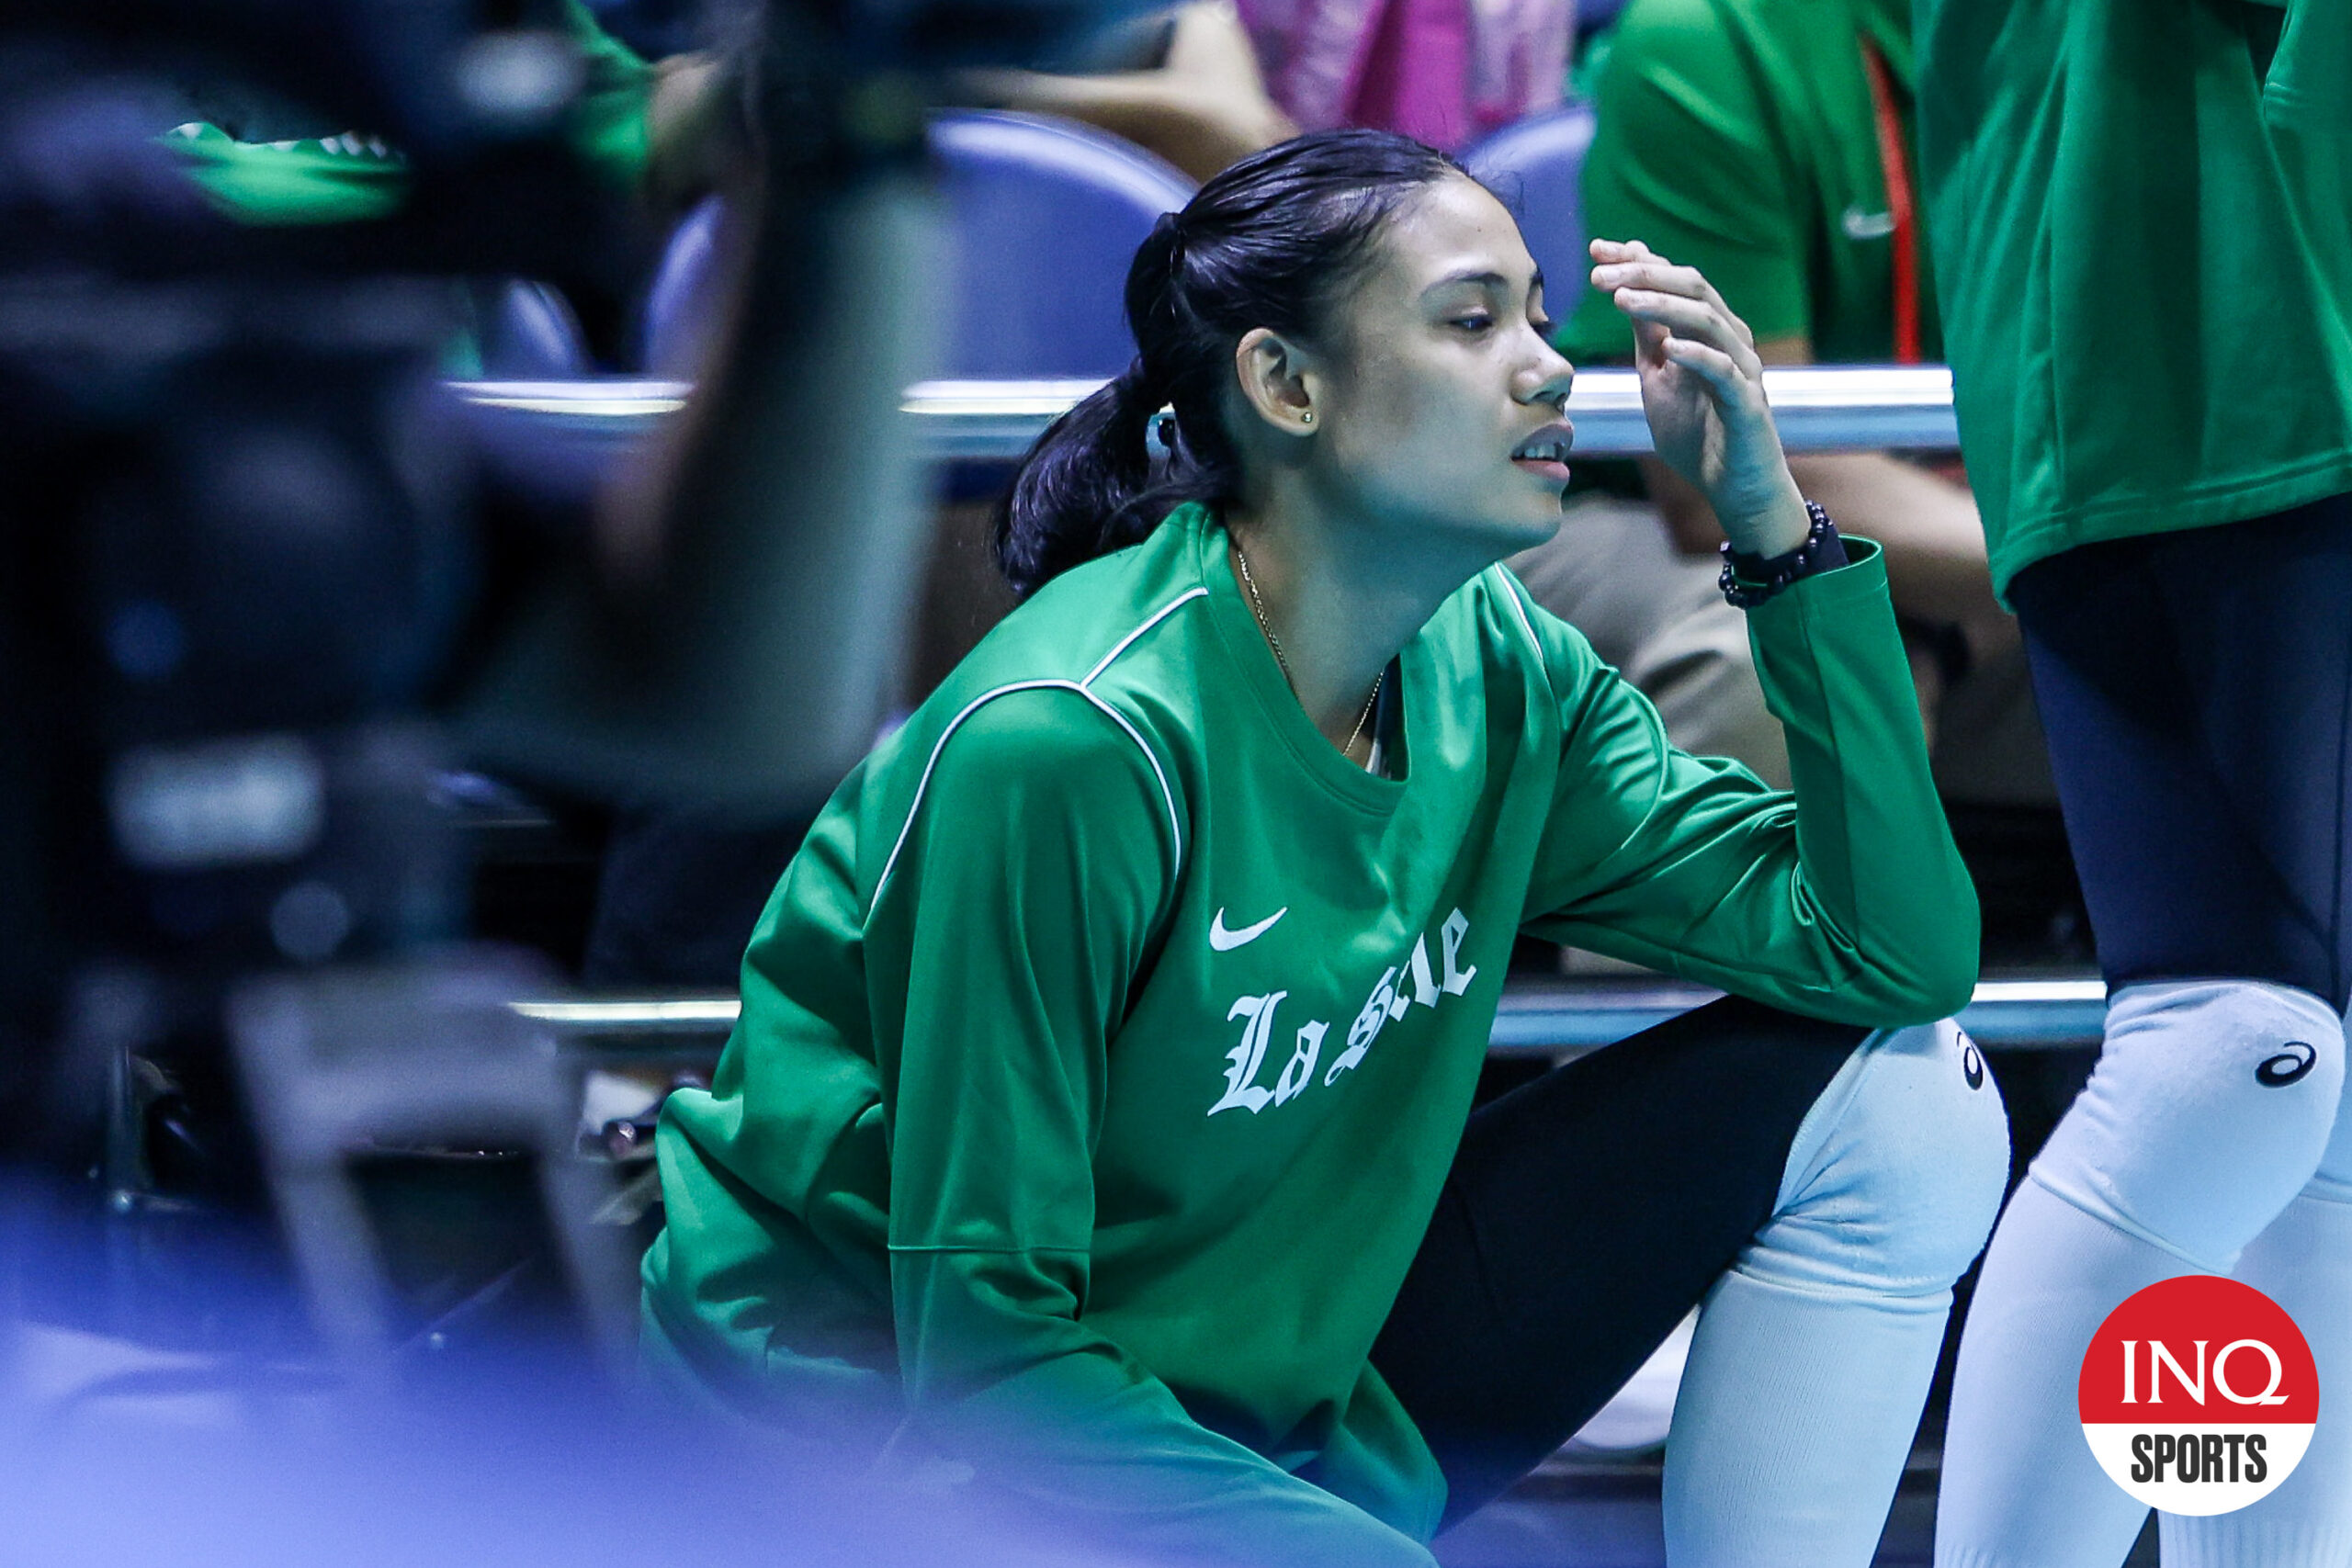 La estrella de La Salle Lady Spikers, Angel Canino, está fuera del torneo de voleibol femenino de la temporada 86 de la UAAP por una lesión en el brazo.  –MARLO CUETO/INQUIRER.net